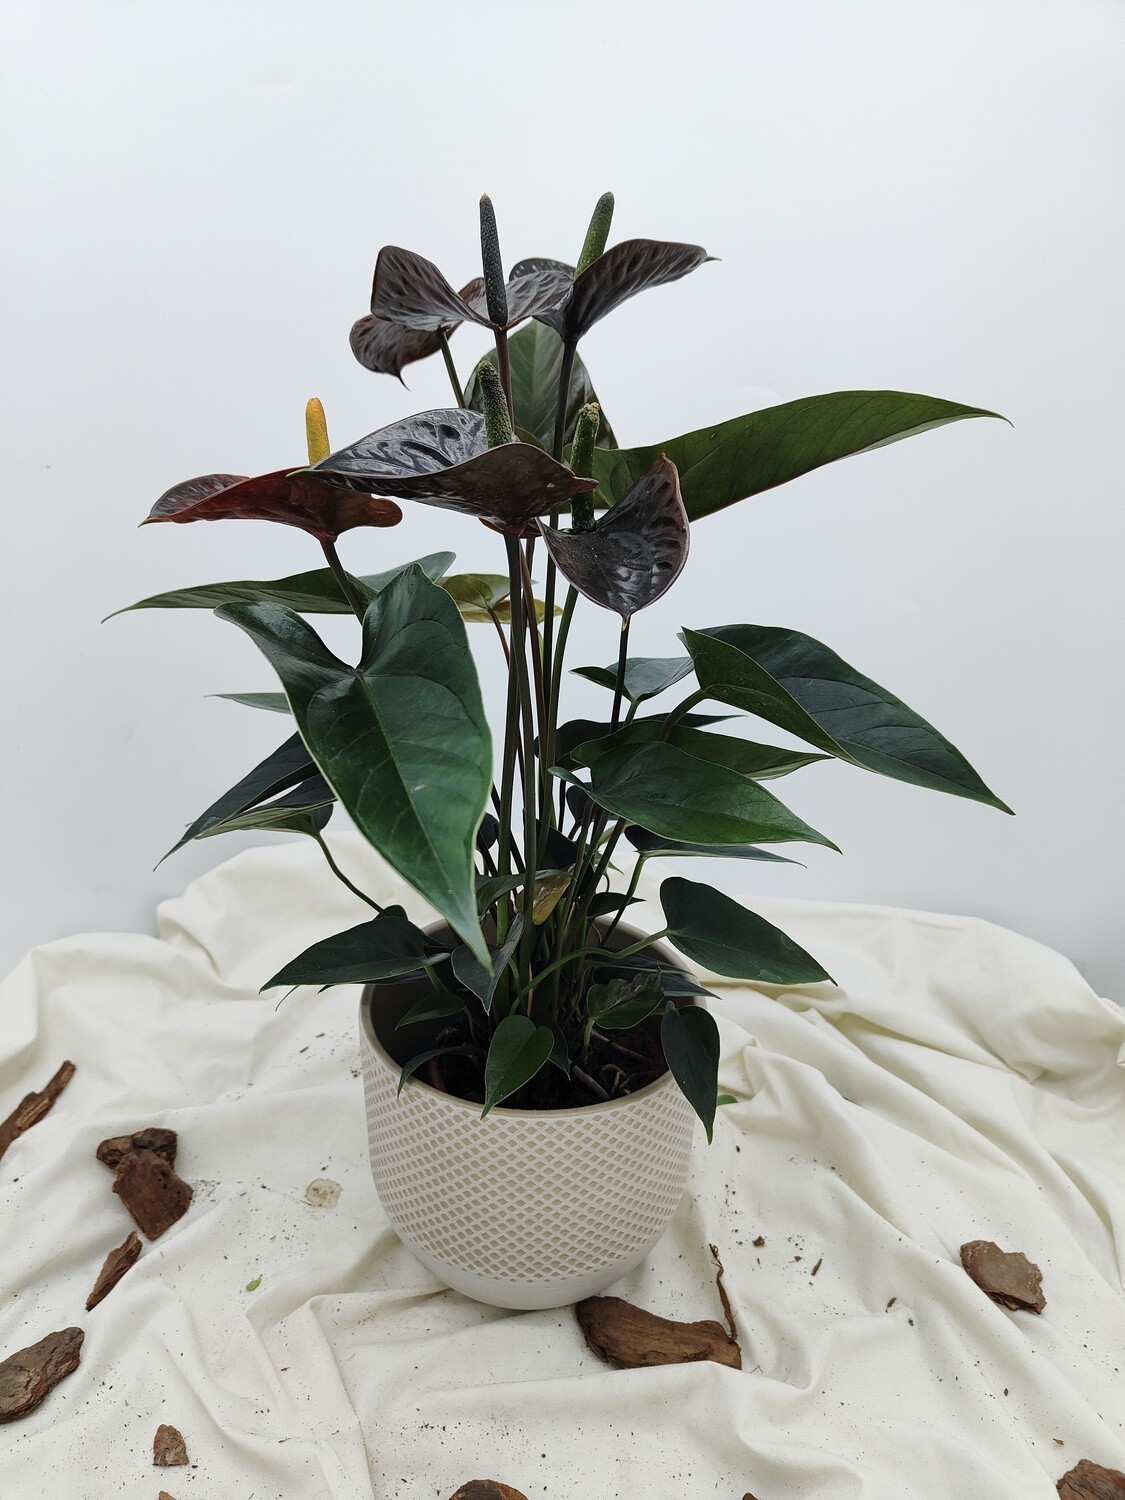 "AmaPlant Anturio Black Love" frondoso y repleto de corazones, la flor del amor de pequeños corazones 50 cm M12 (floreciente) - Interior con luz natural sin sol directo - ENVIO INCLUIDO